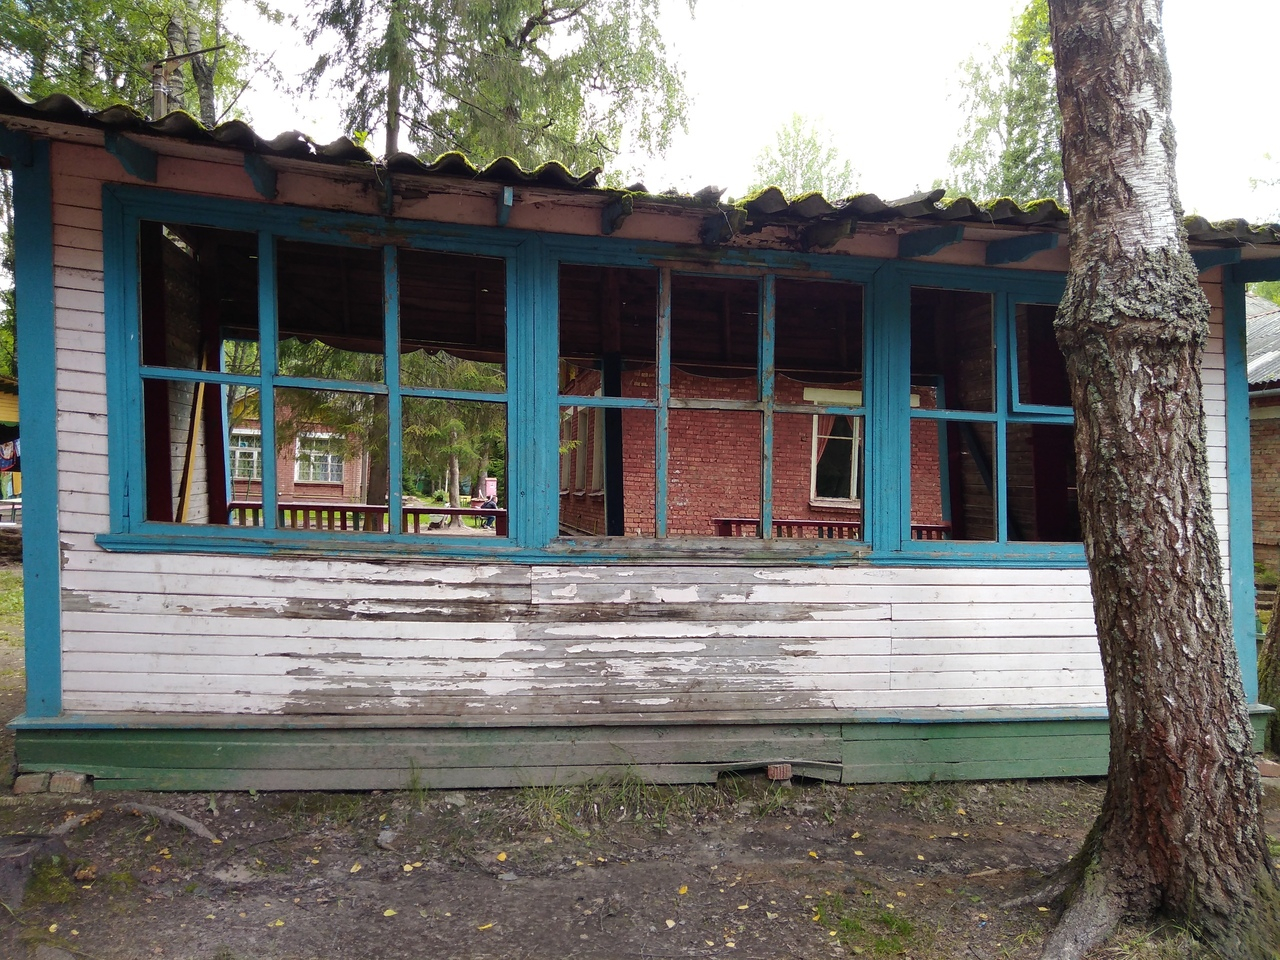 «Крыша скоро рухнет на голову»: комиссия нагрянула в детский лагерь в Ярославле